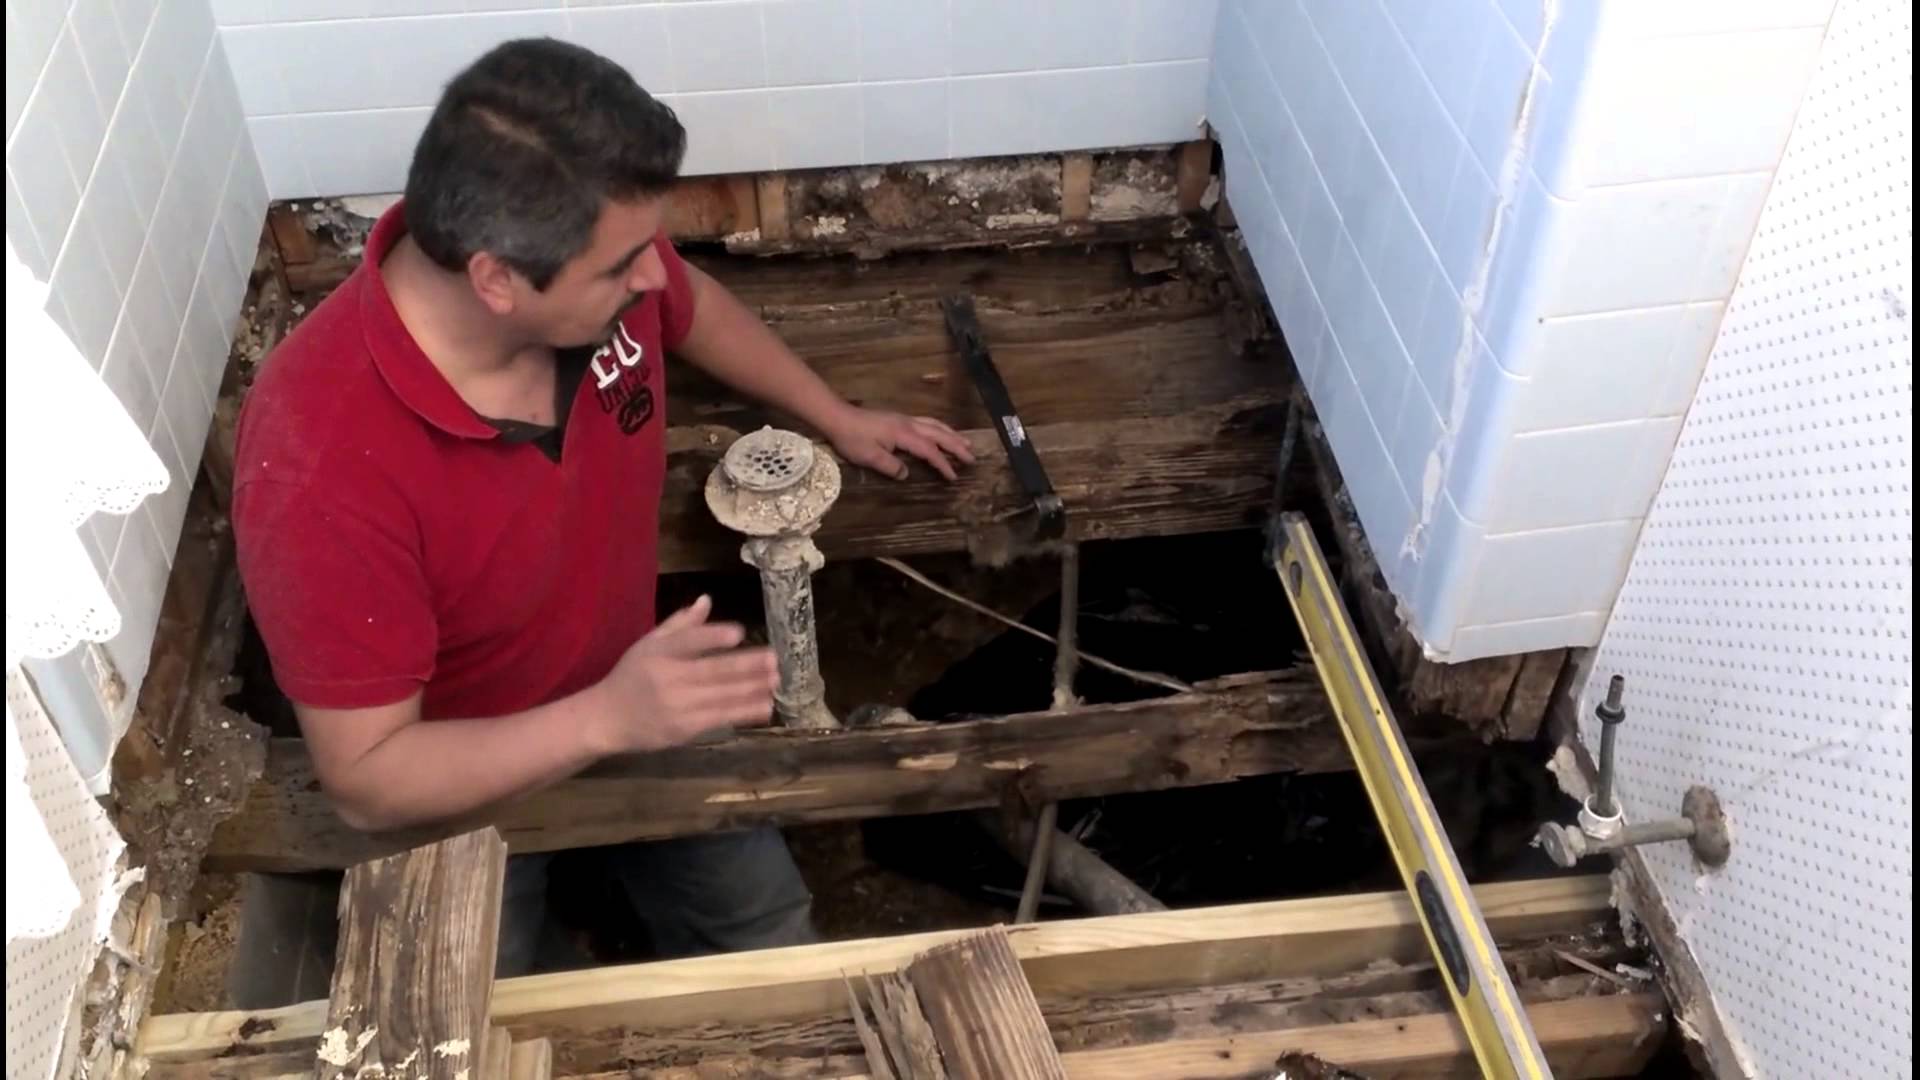 Пол в ванной в деревянном доме: специфика помещения и выбор покрытия